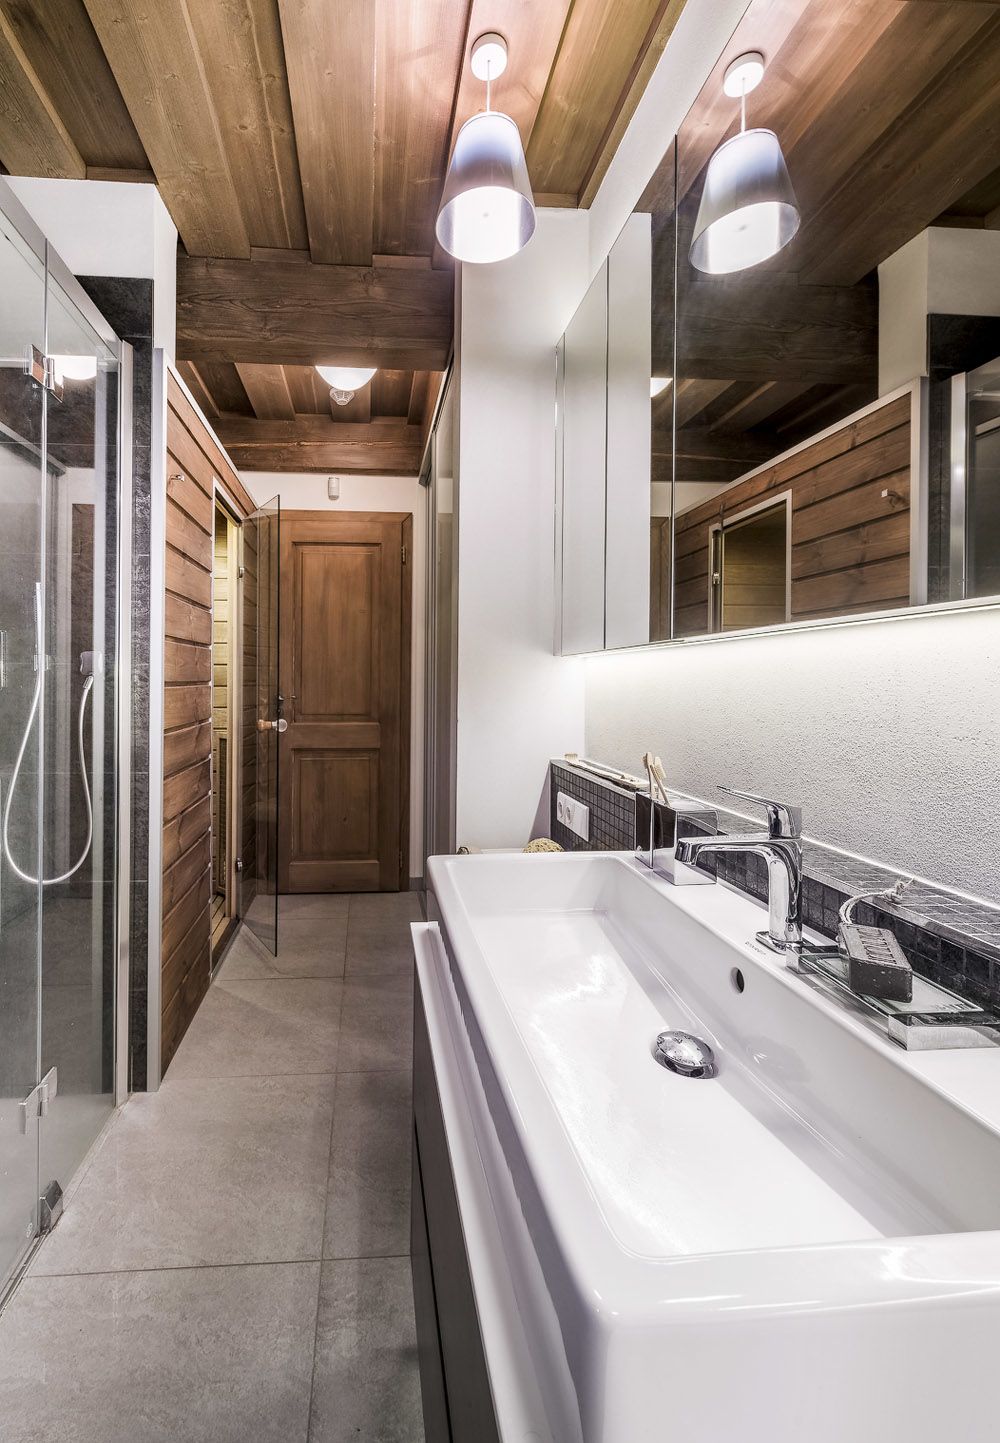 Koupelna v přízemí zahrnuje také infrasaunu, klozet (Duravit) a skříň s úložným prostorem. Je vybavena prostorným sprchovým koutem s parním panelem (Artwegwer) a velkým umyvadlem Vero (Duravit) se stojánkovou baterií (Palazzani).